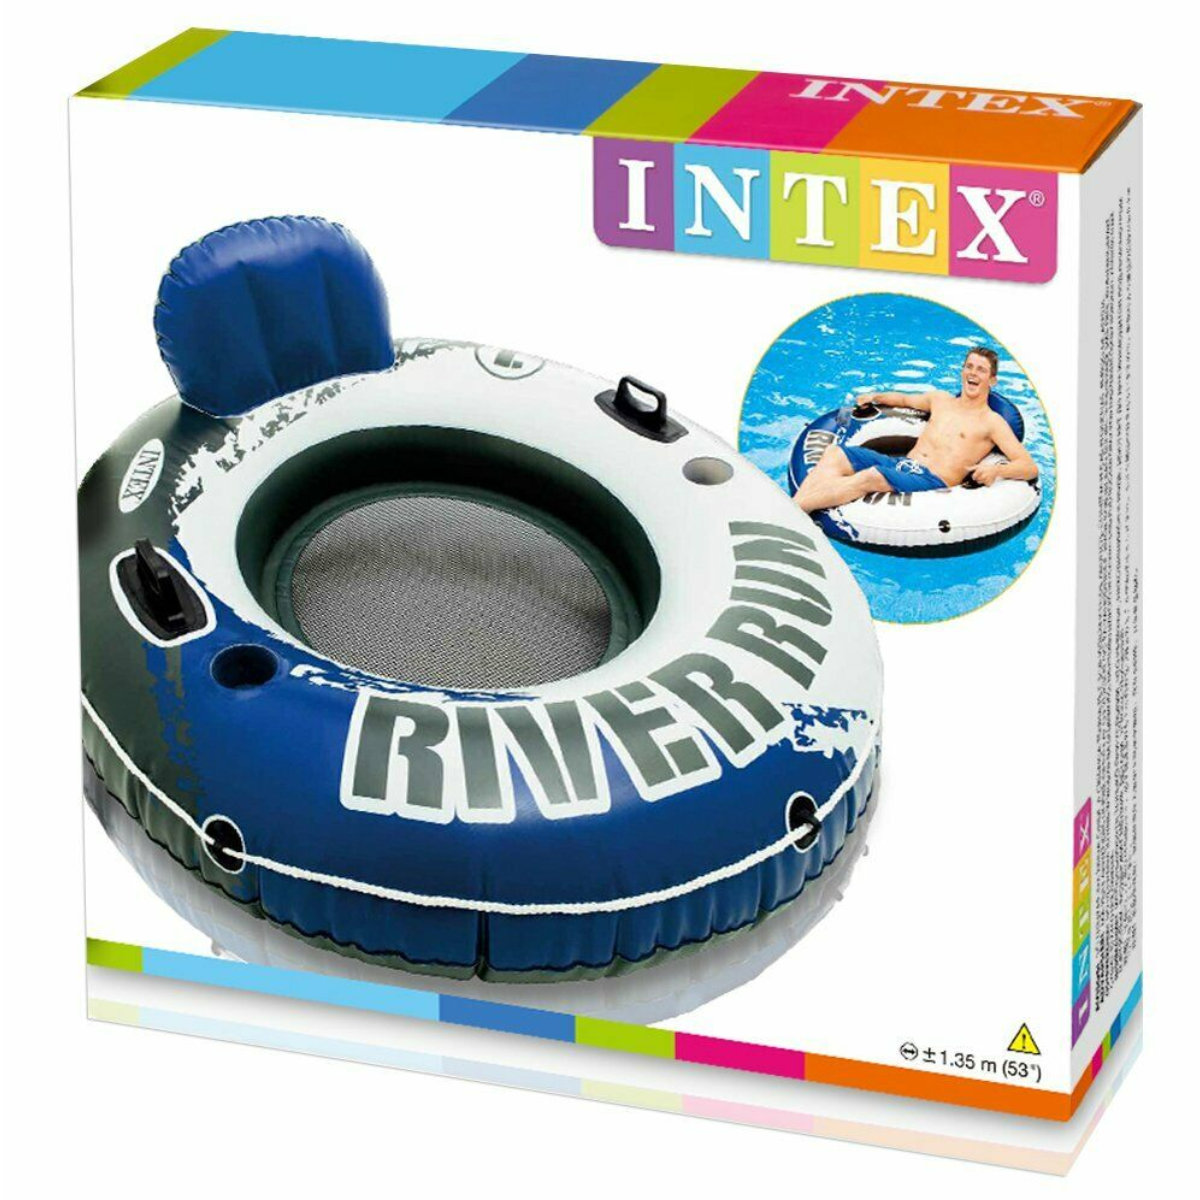 Intex Flotador River Run